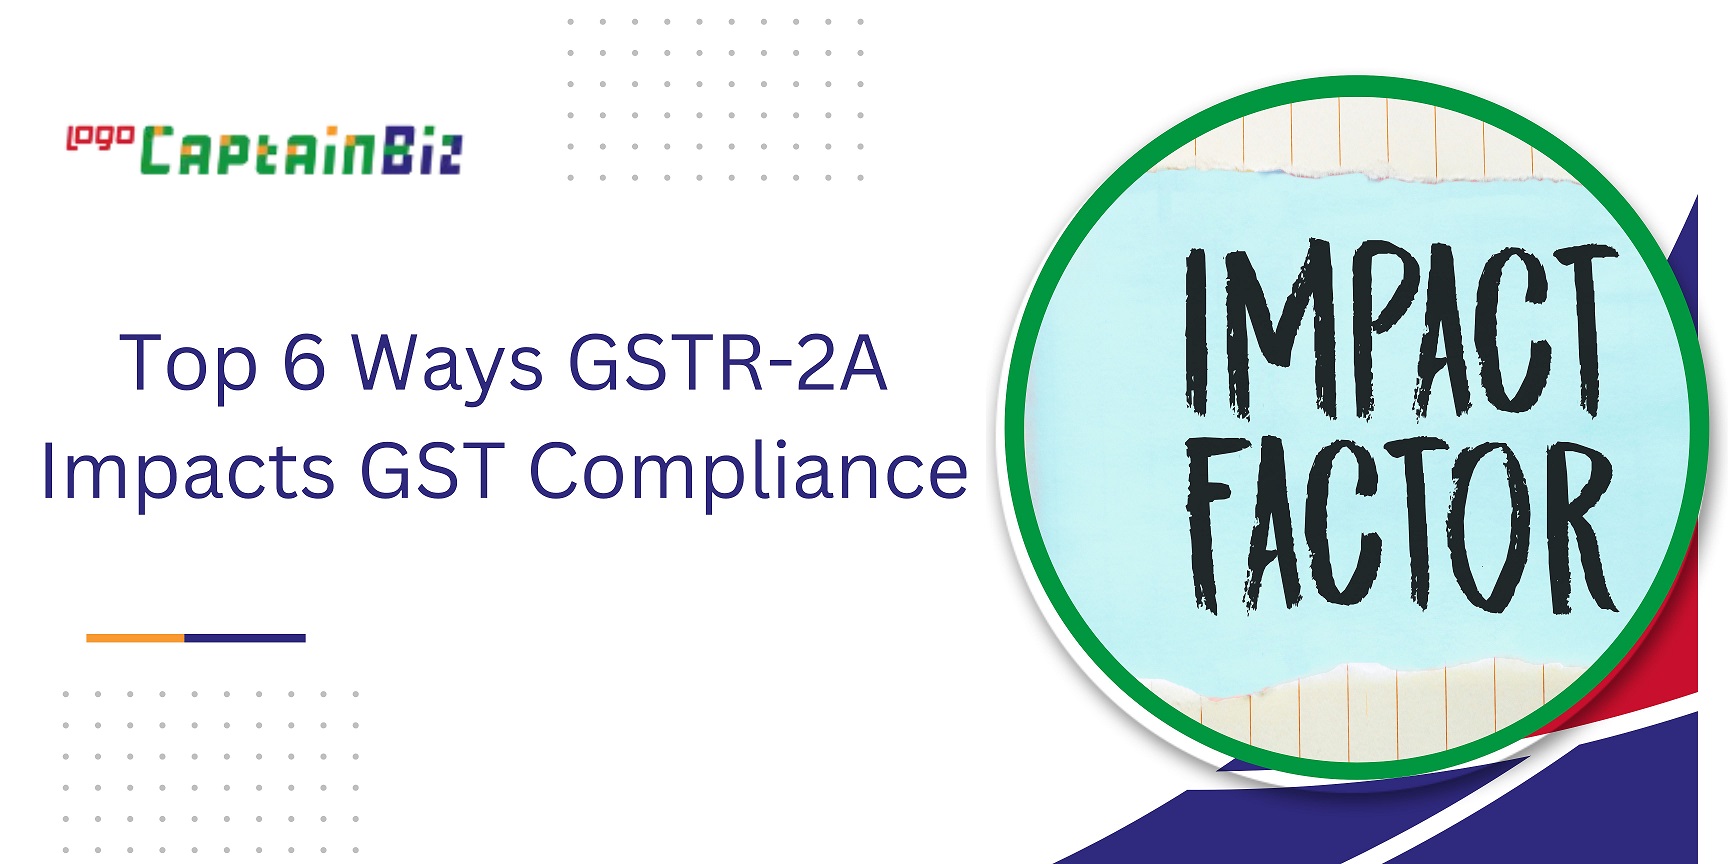 CaptainBiz: Top 6 Ways GSTR-2A Impacts GST Compliance